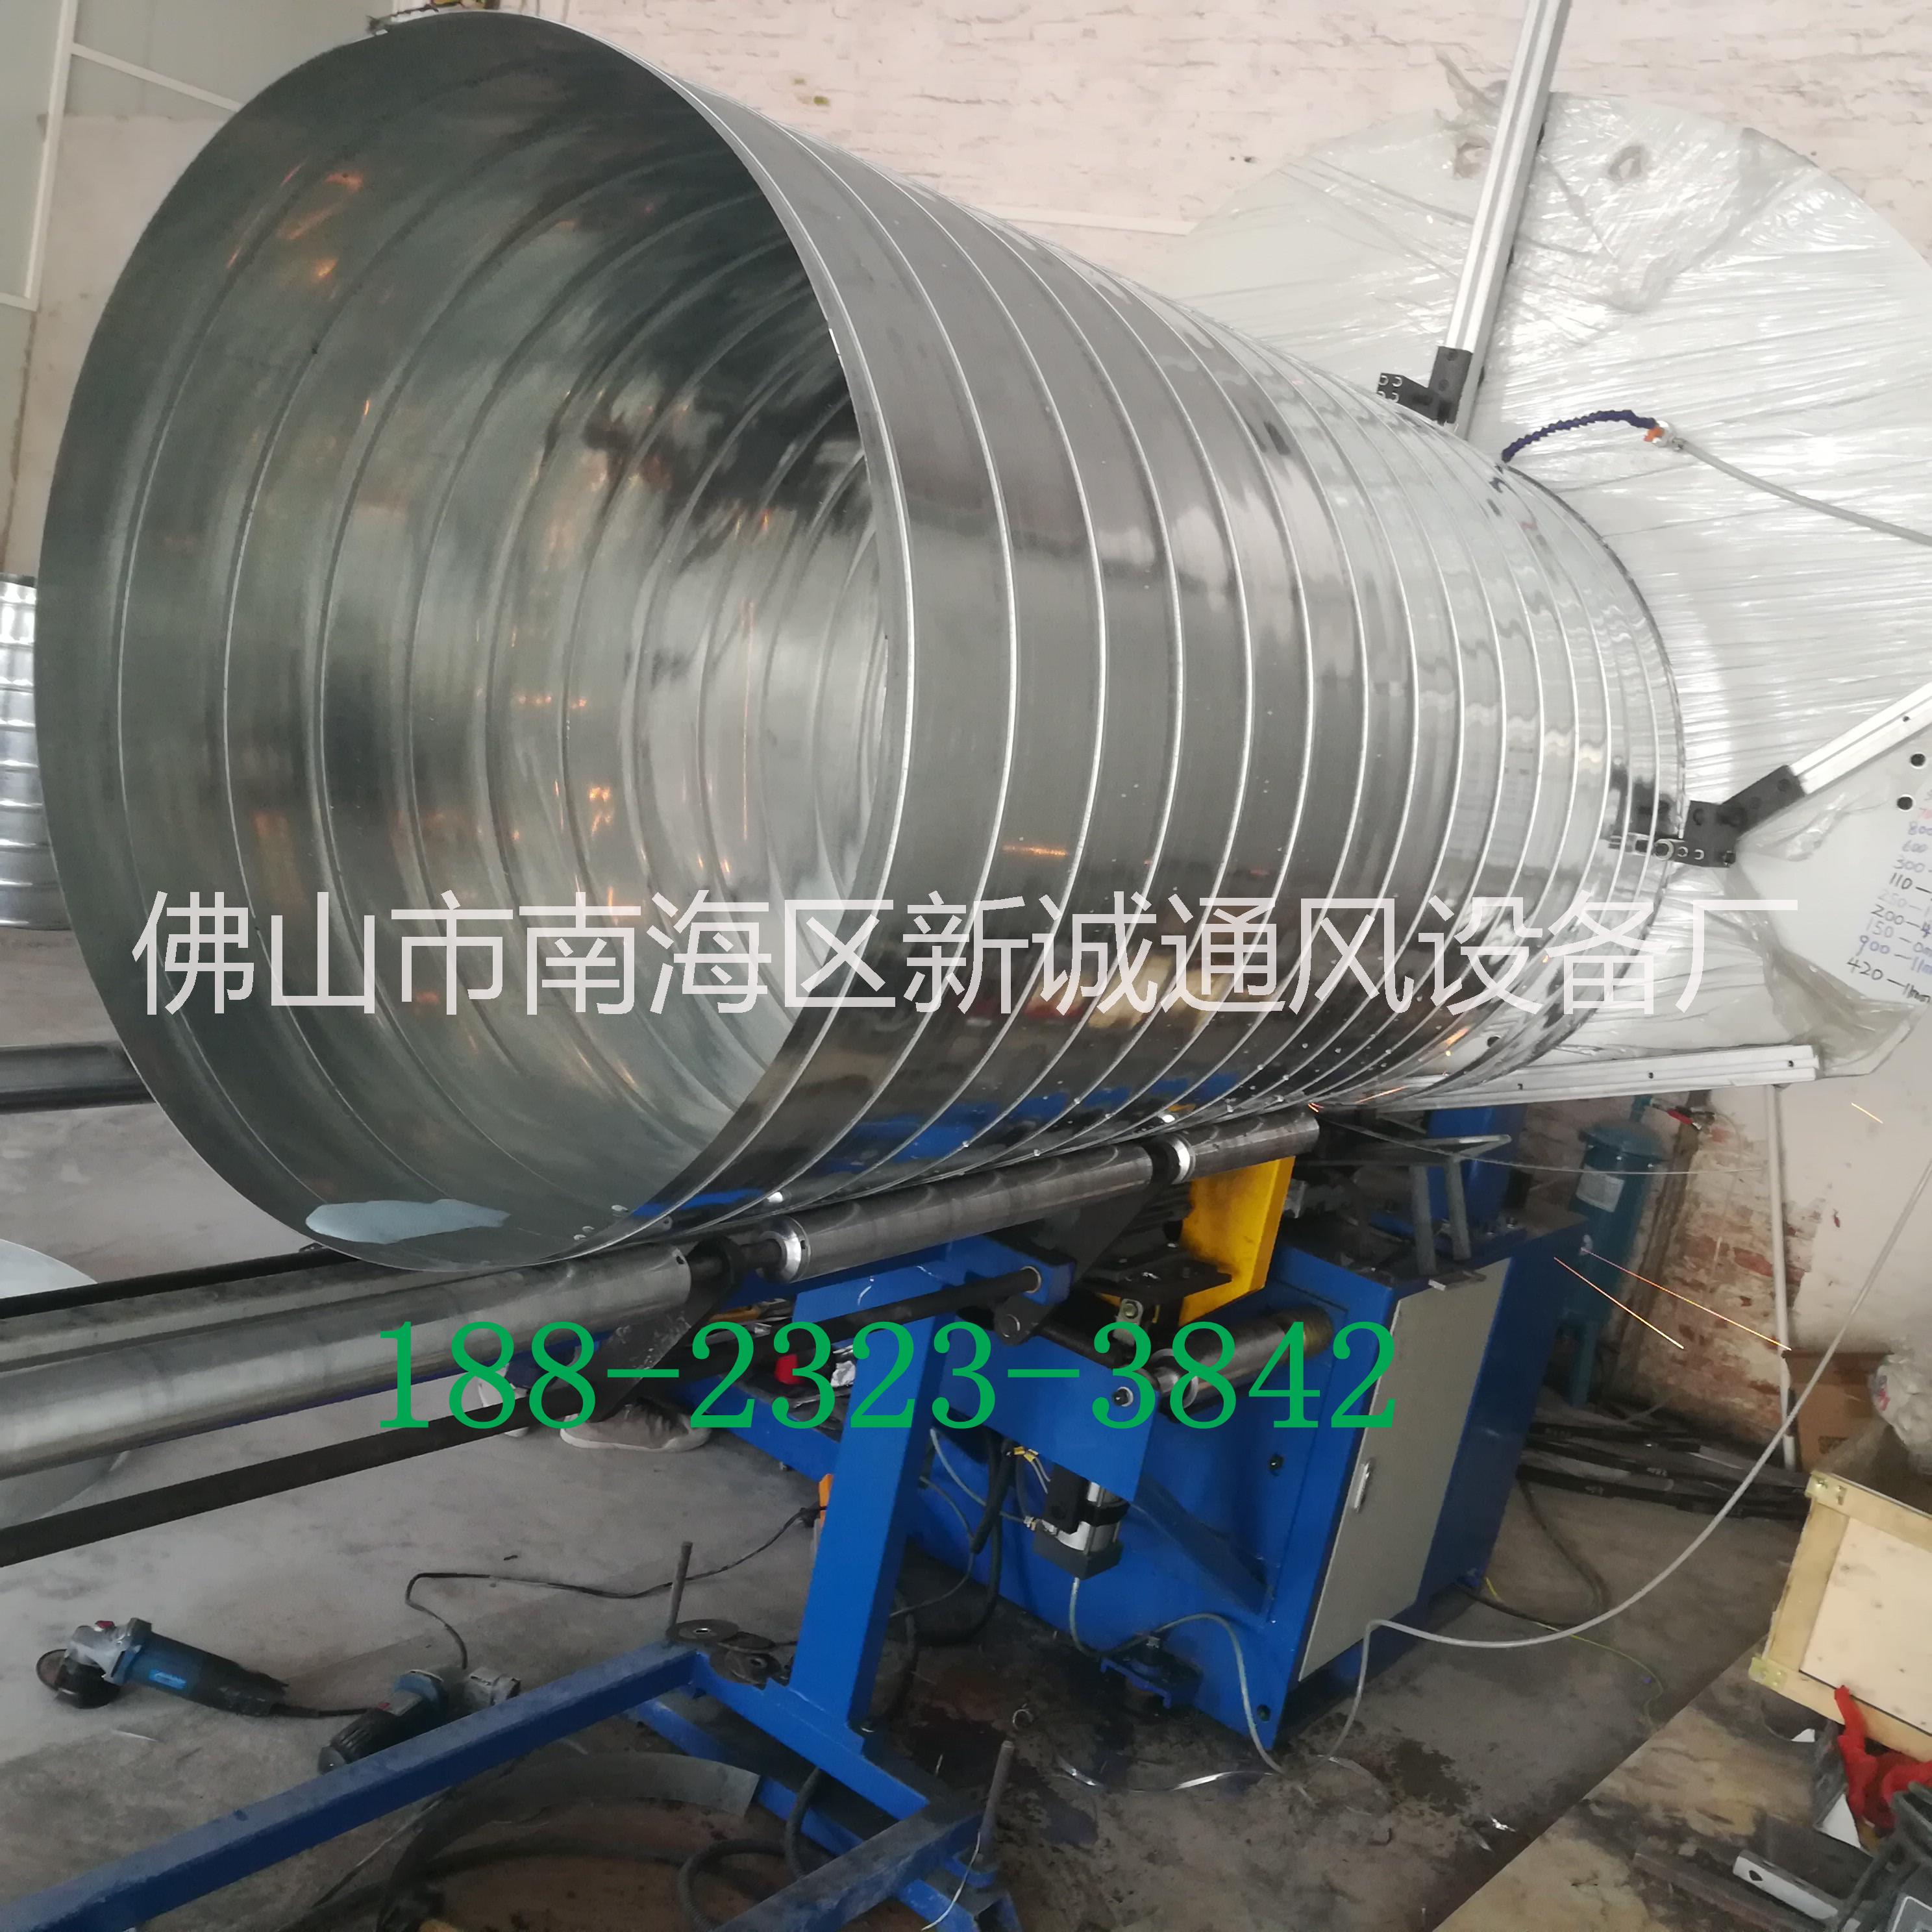 惠州通风管道工程 新诚螺旋风管厂家专业环保通风管道生产安装